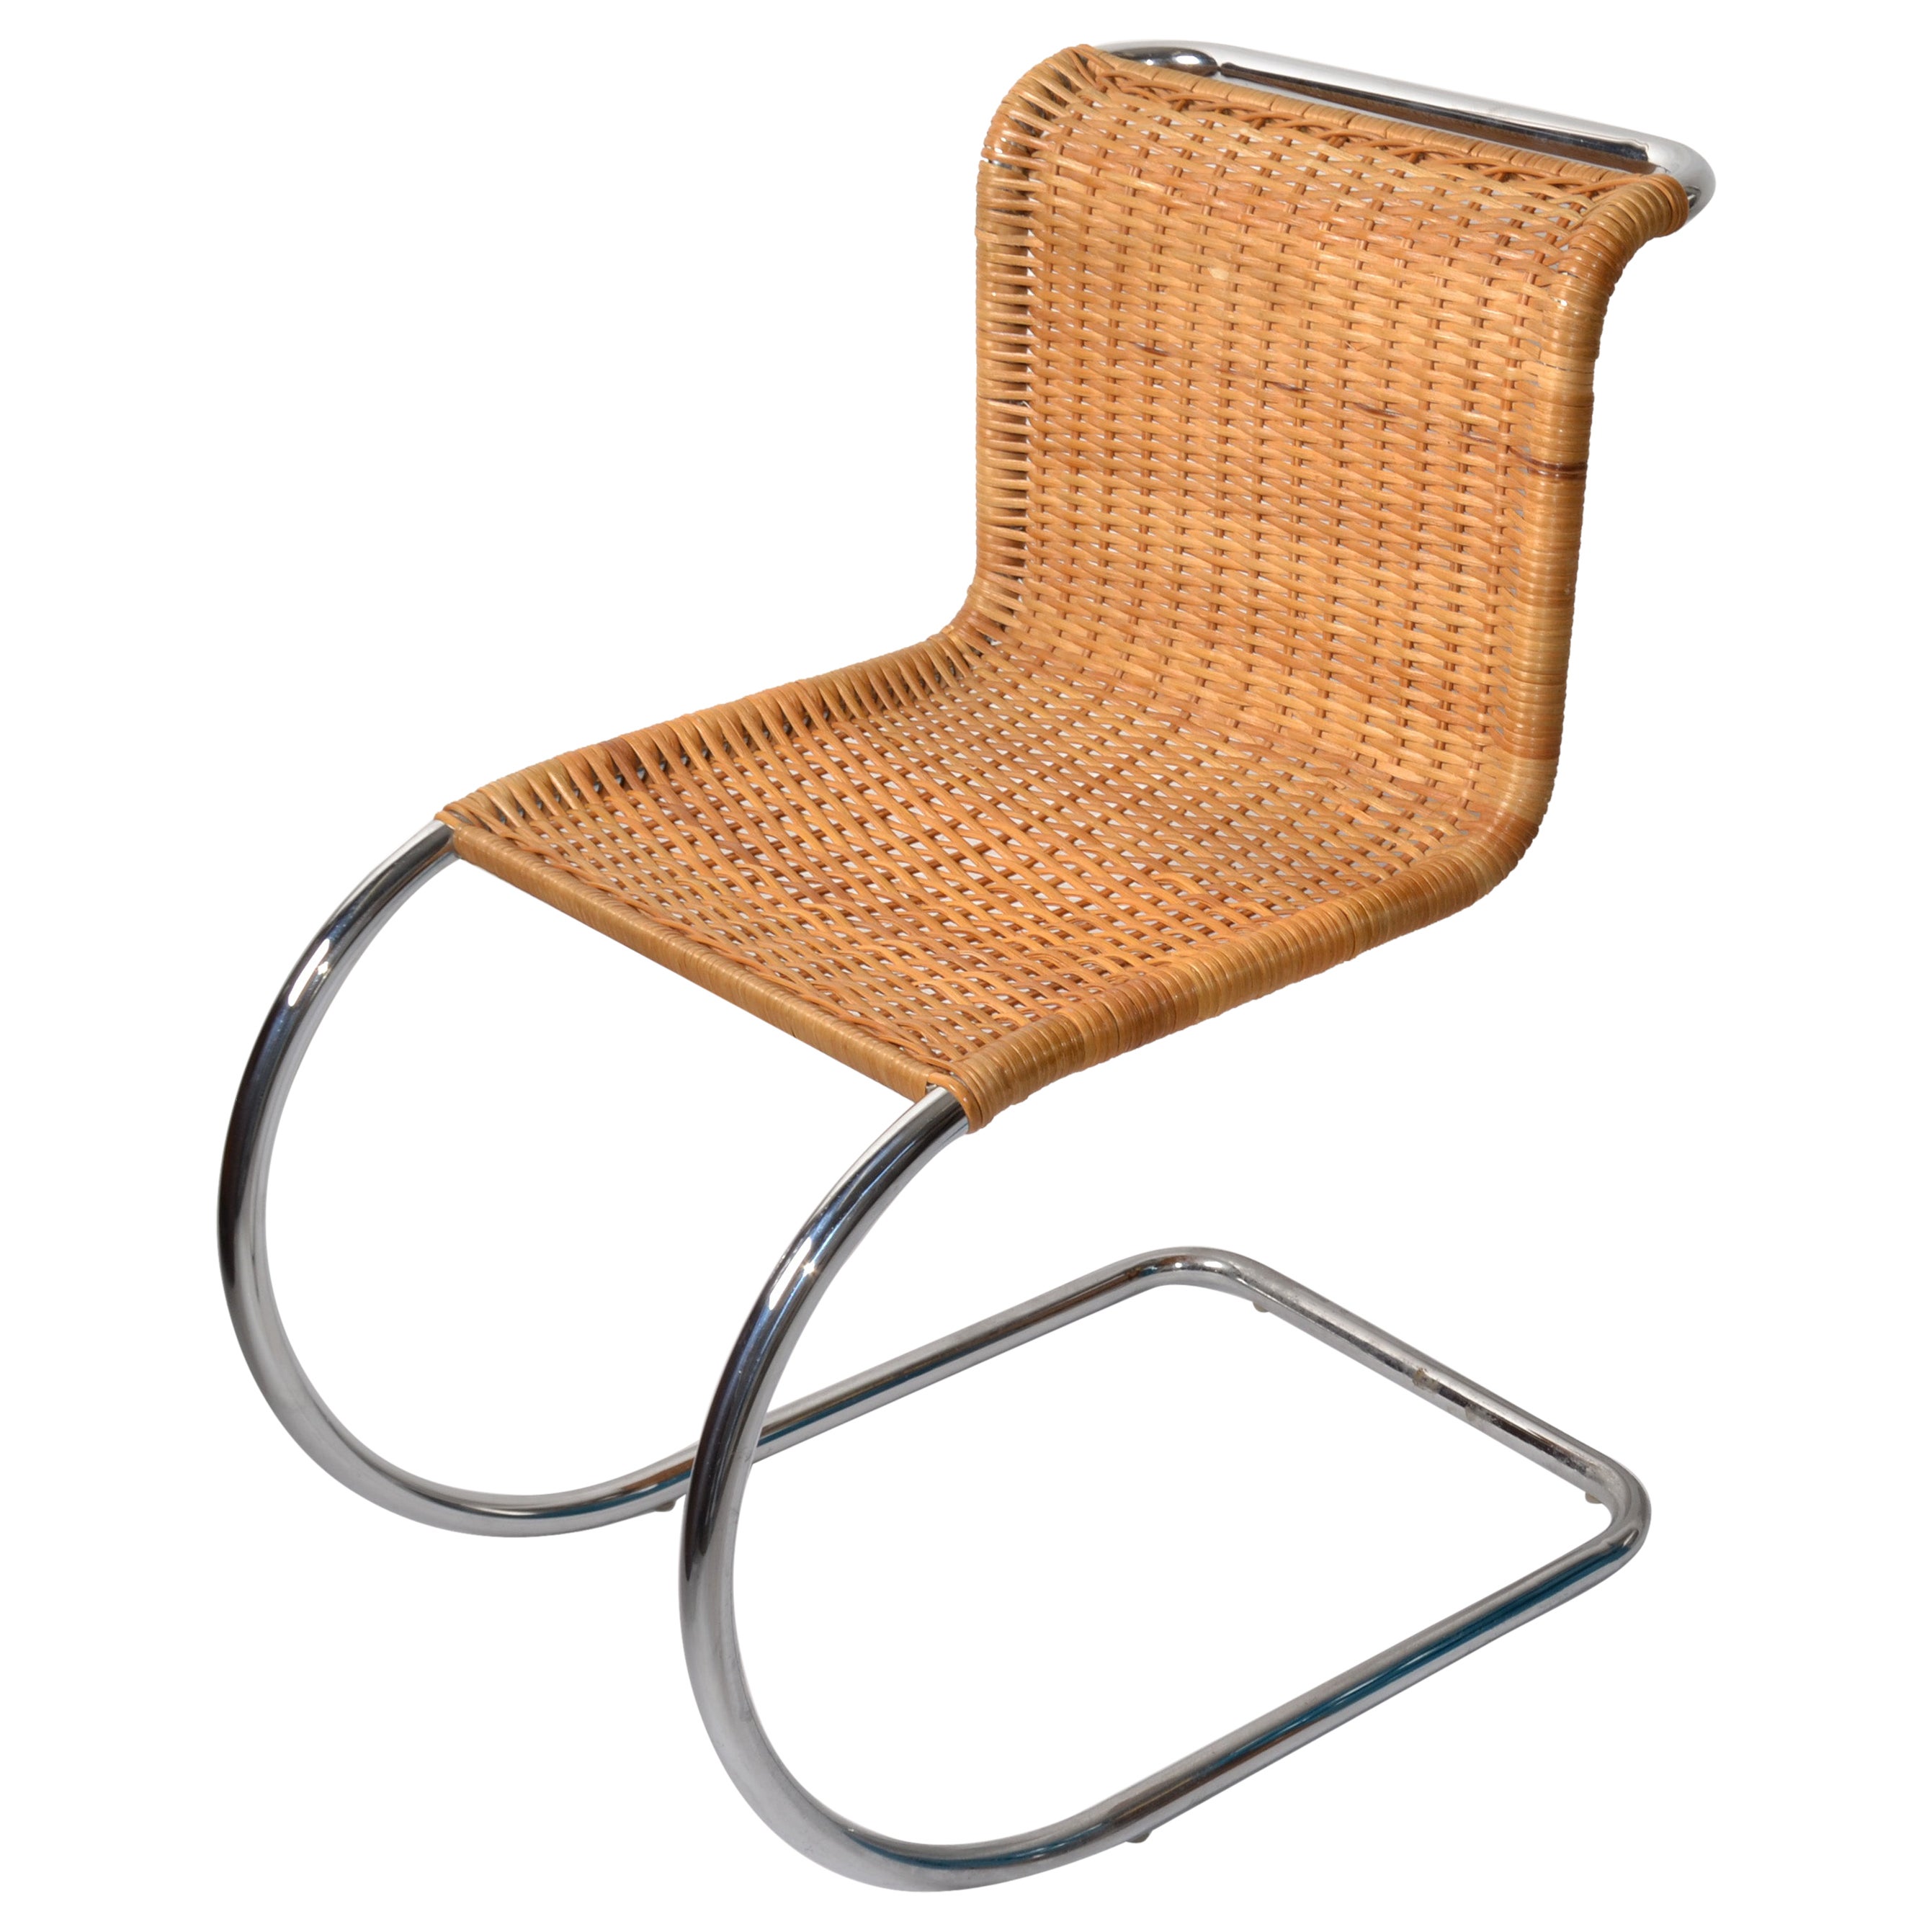 Sessel ohne Armlehne aus geflochtenem Rohr Ludwig Mies van der Rohe zugeschrieben 70er Jahre